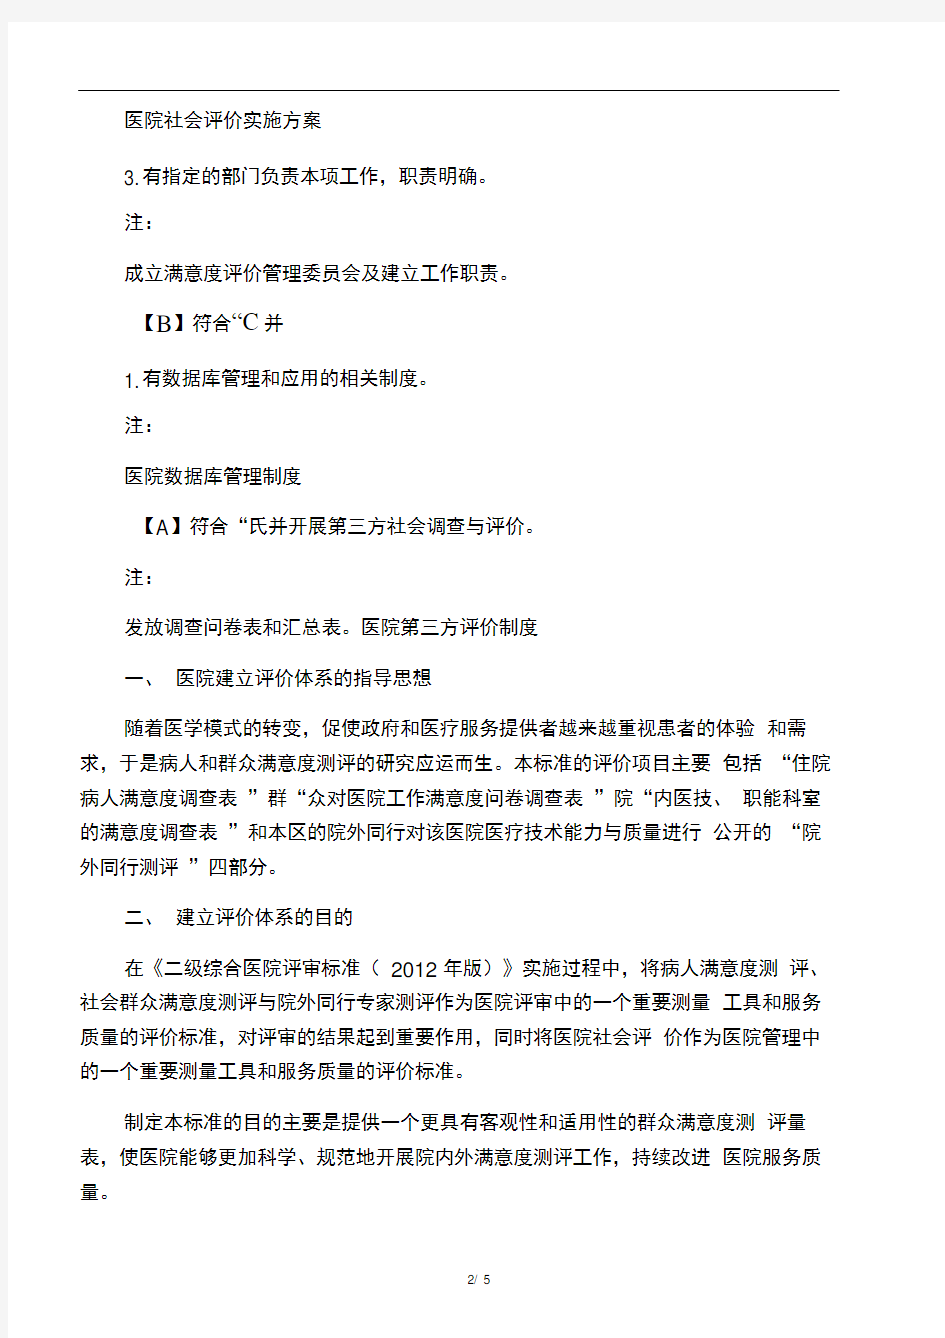 6.11.3(昌江县)探索建立第三方开展社会评价的工作制度,以确保社会评价结果的客观公正。